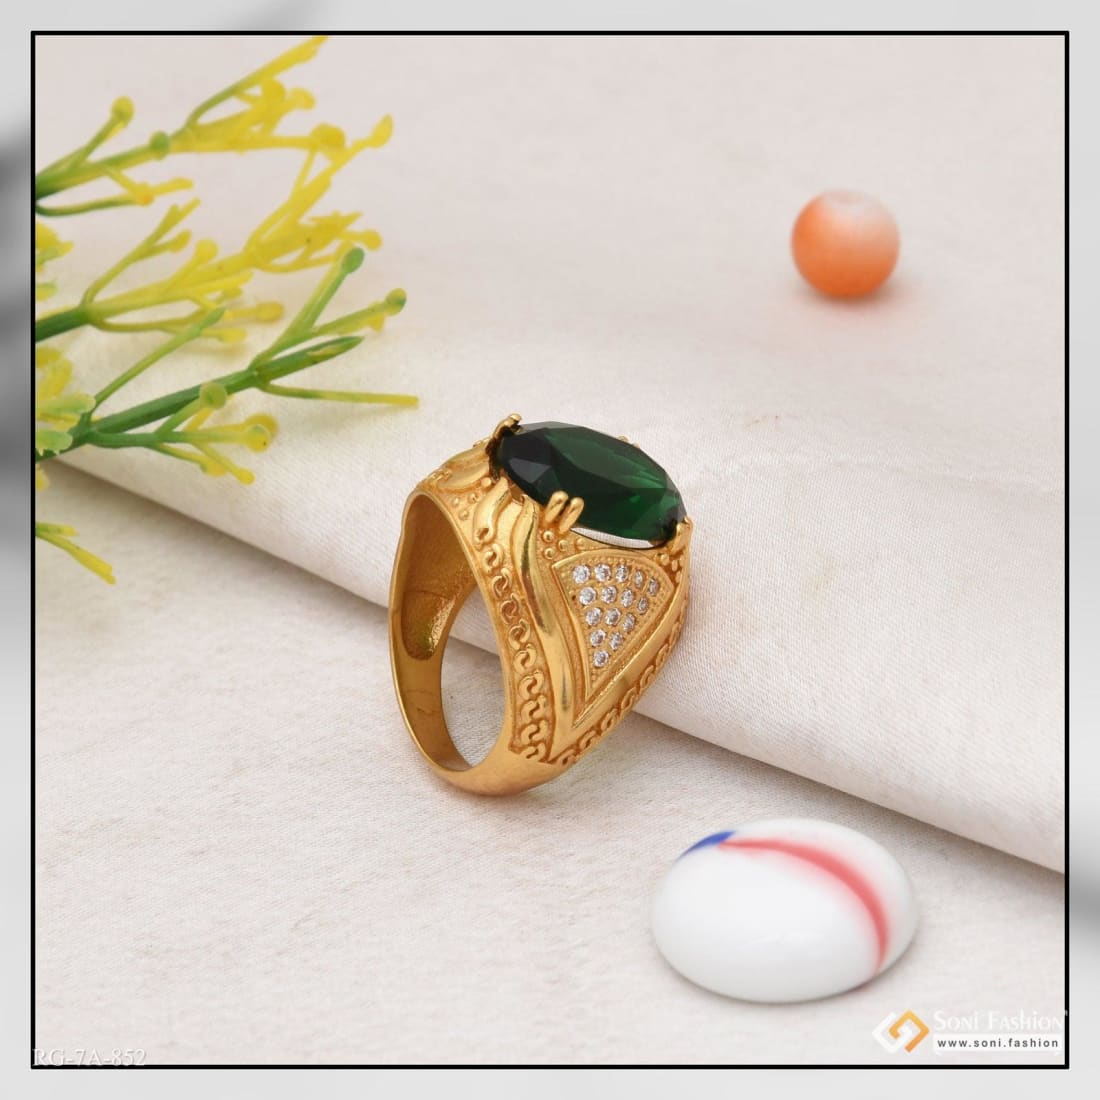 Buy 22K Gold Rings For Women Online | Rarefind Jadau Jewellery – Page 2